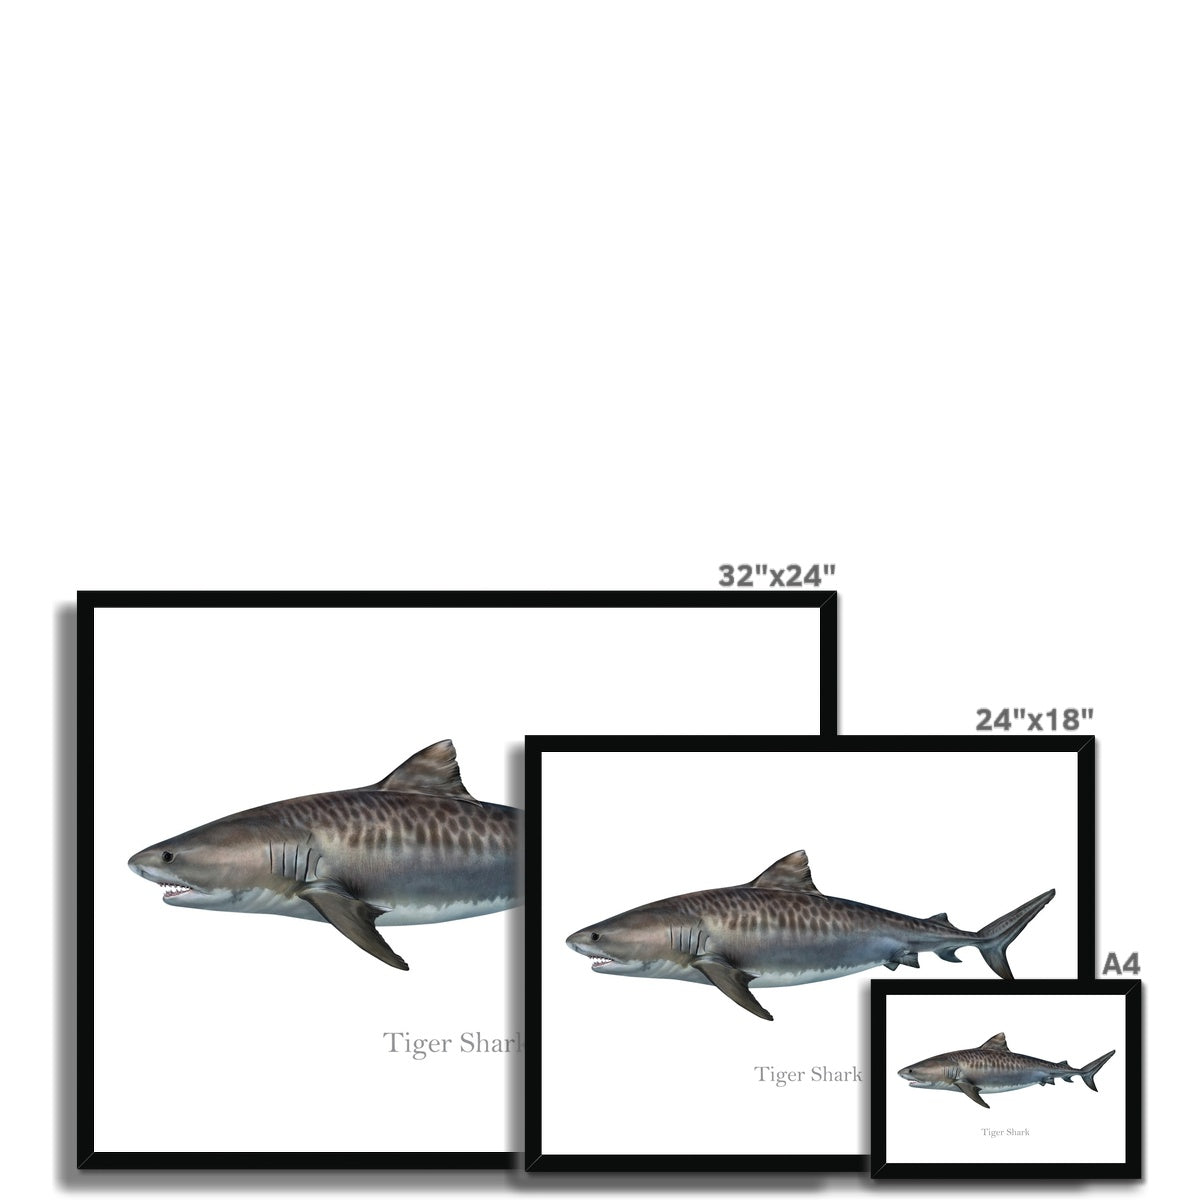 Tiger Shark - Framed Print